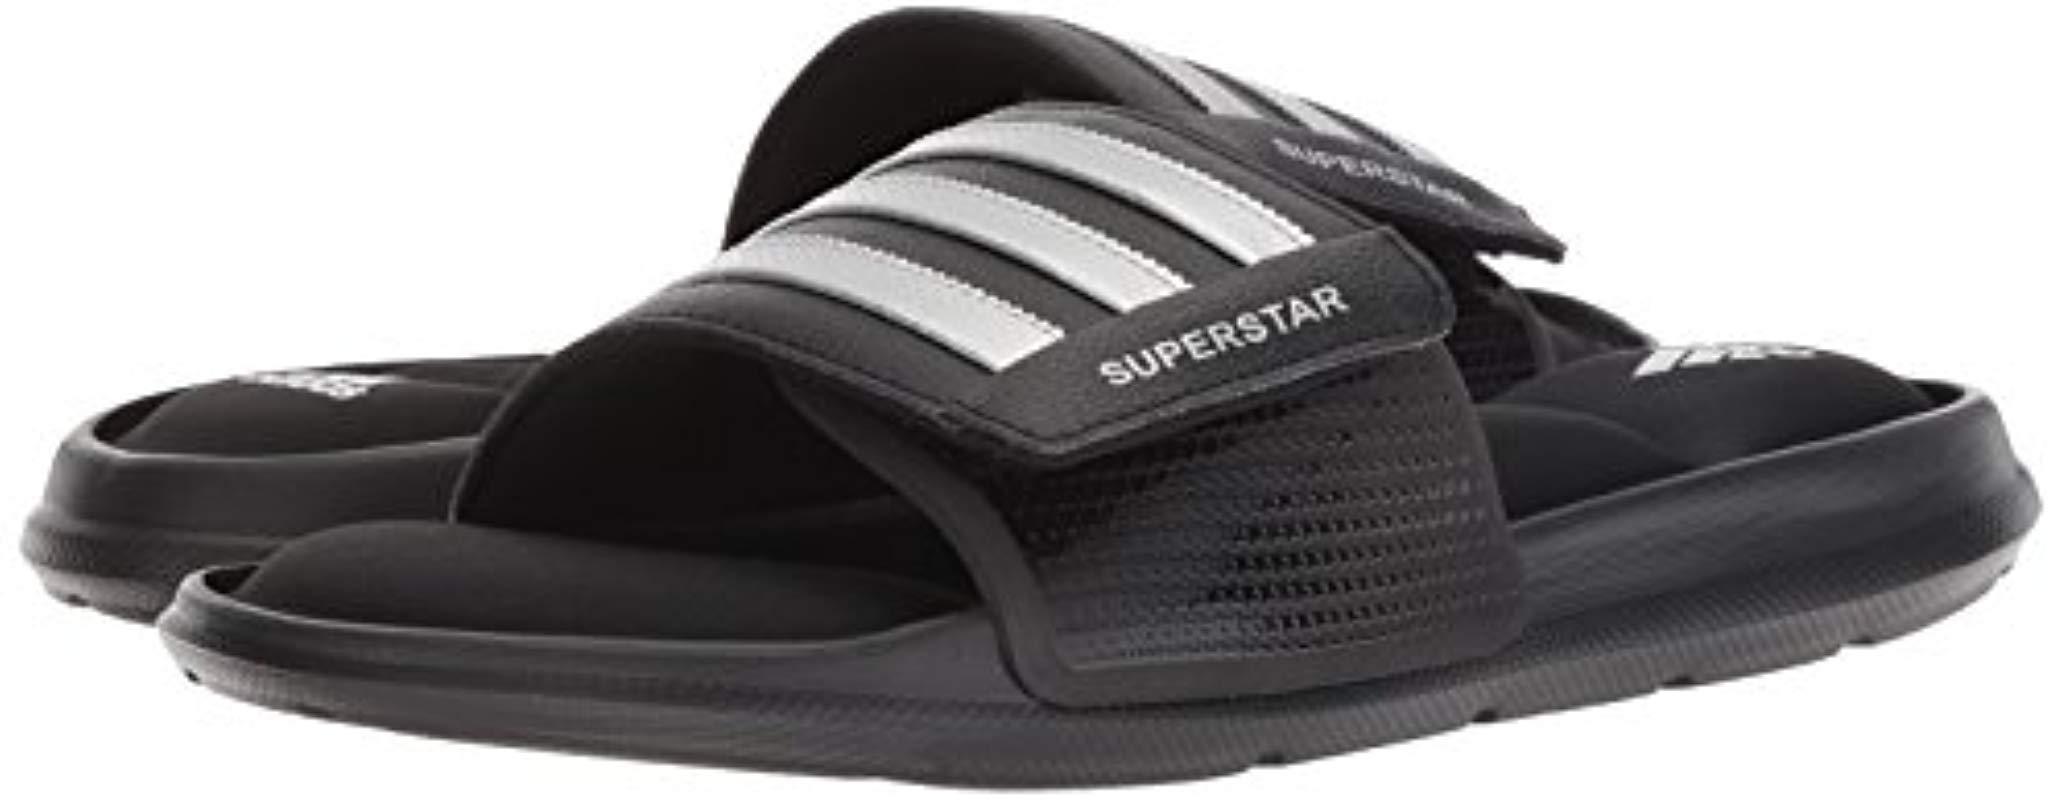 adidas Originals Superstar Slide Sandal in Black for Men - Lyst